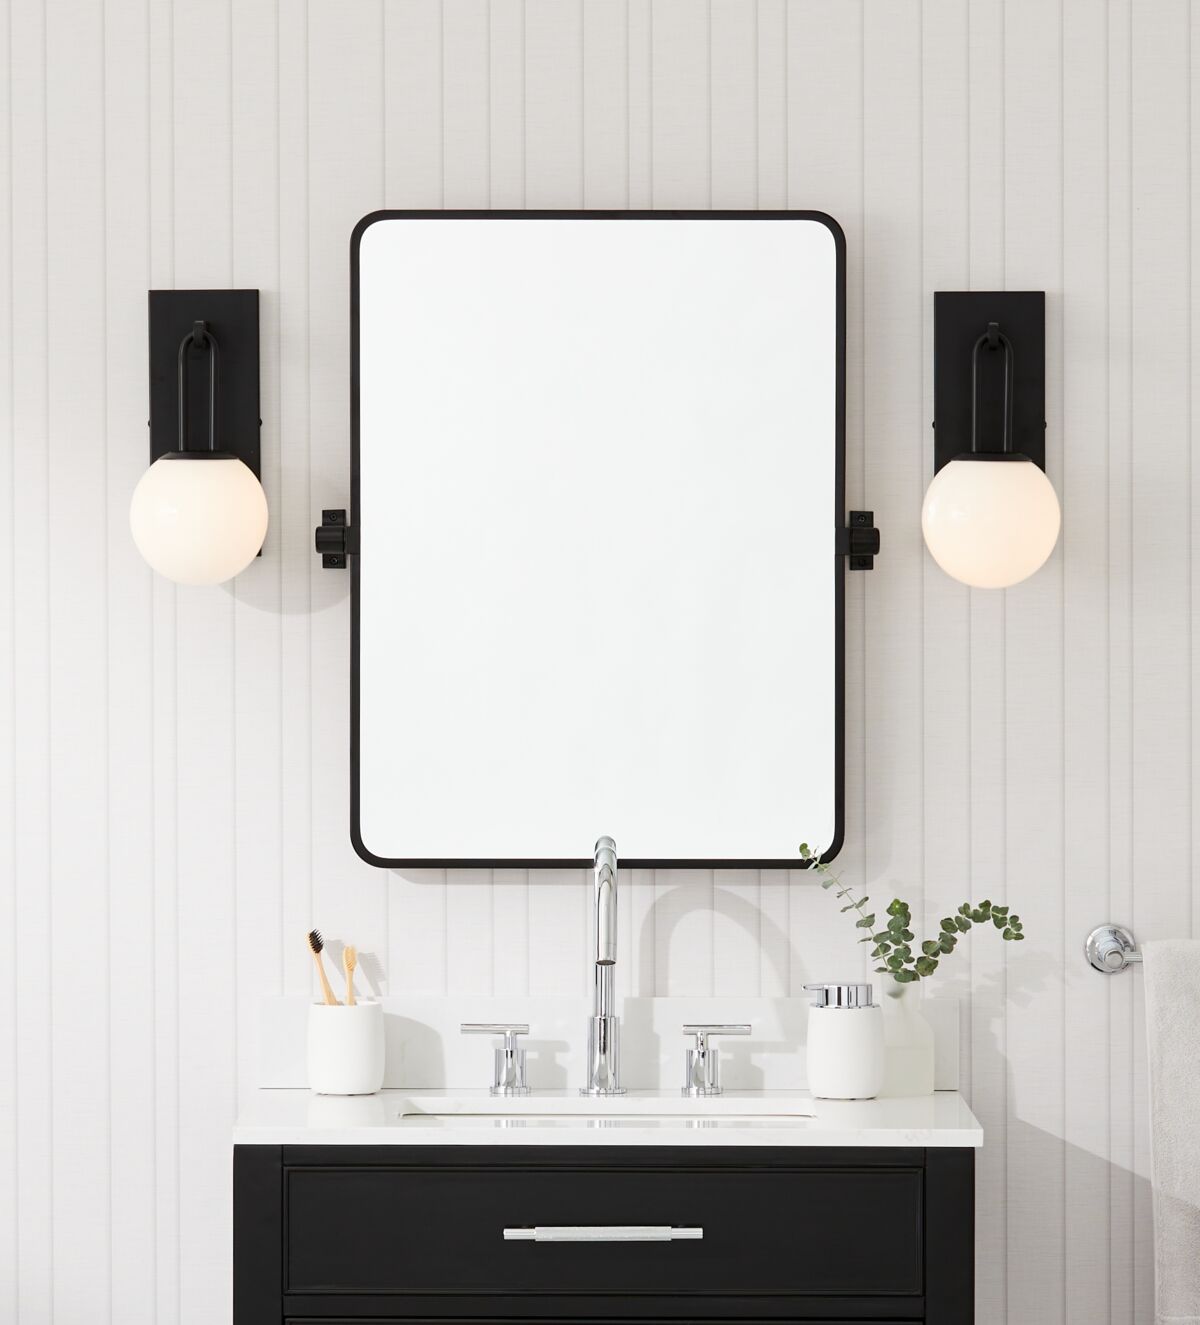 Bathroom update with GlucksteinElements Orly sconces and Westbury mirror